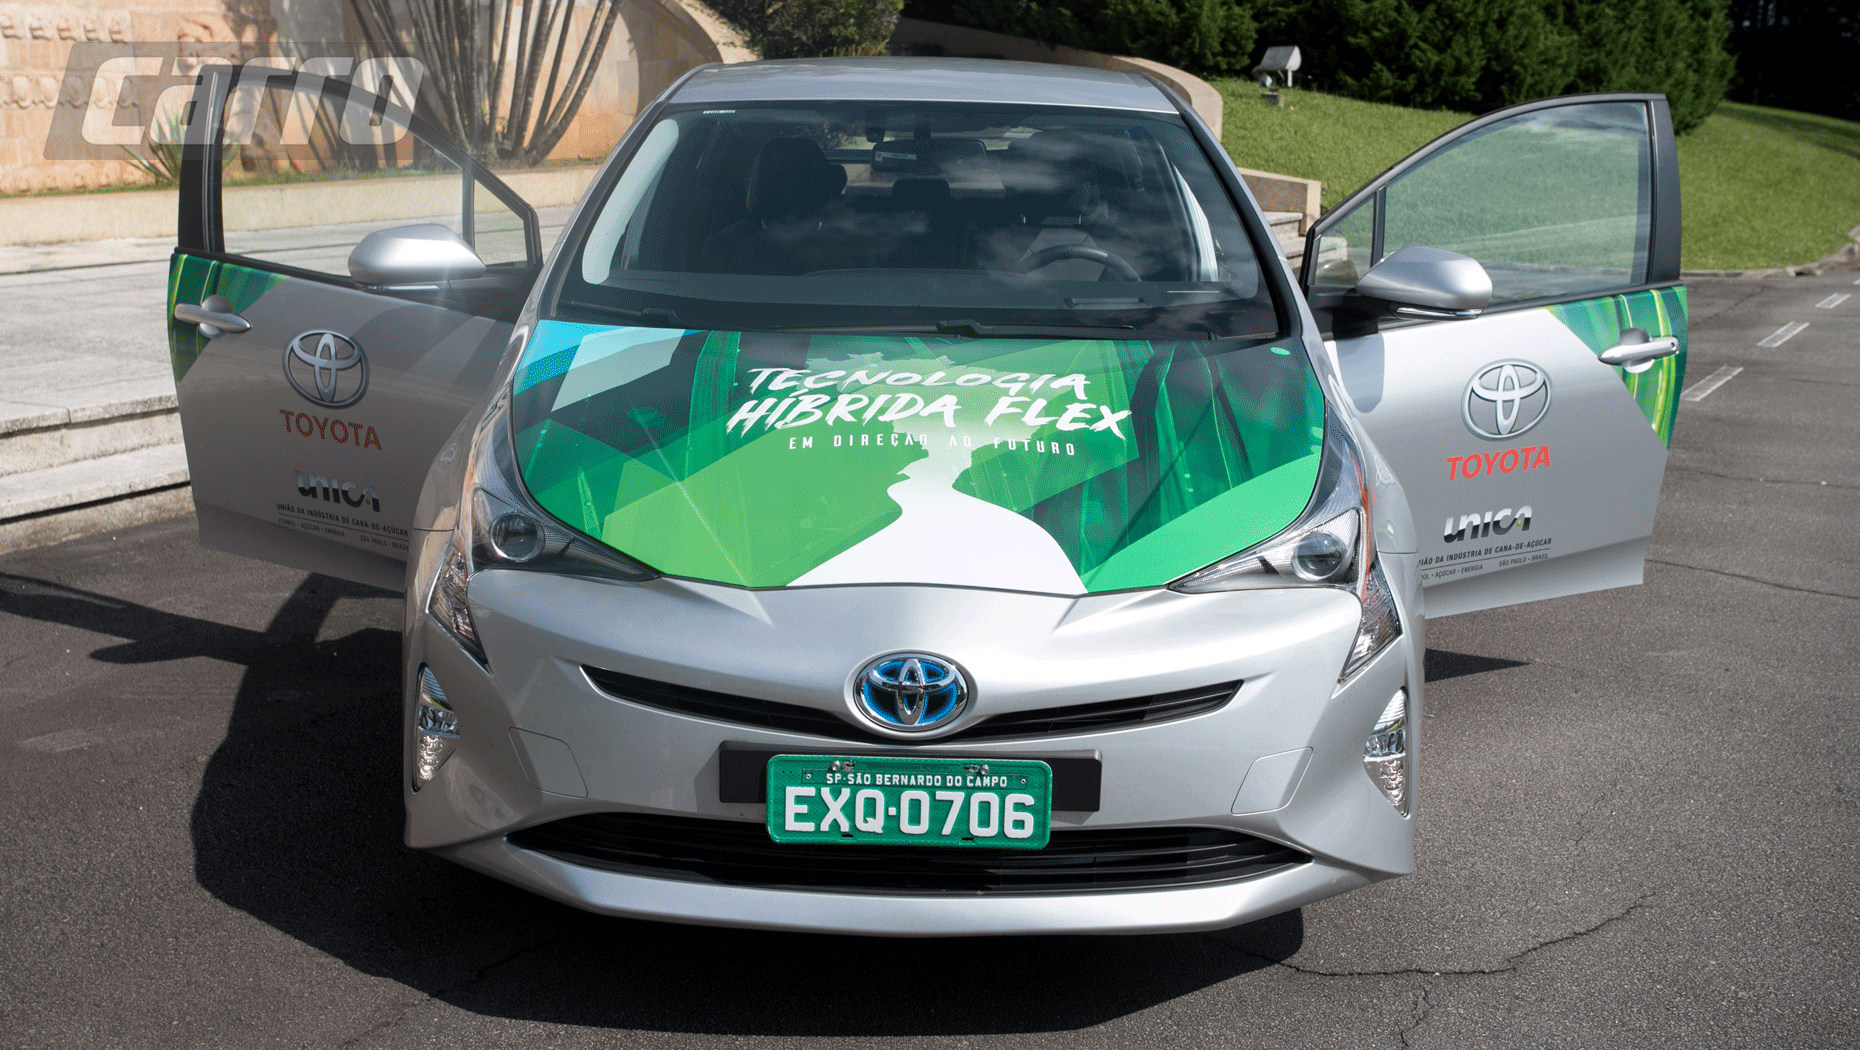 Toyota testa no Brasil carro com nova tecnologia híbrida